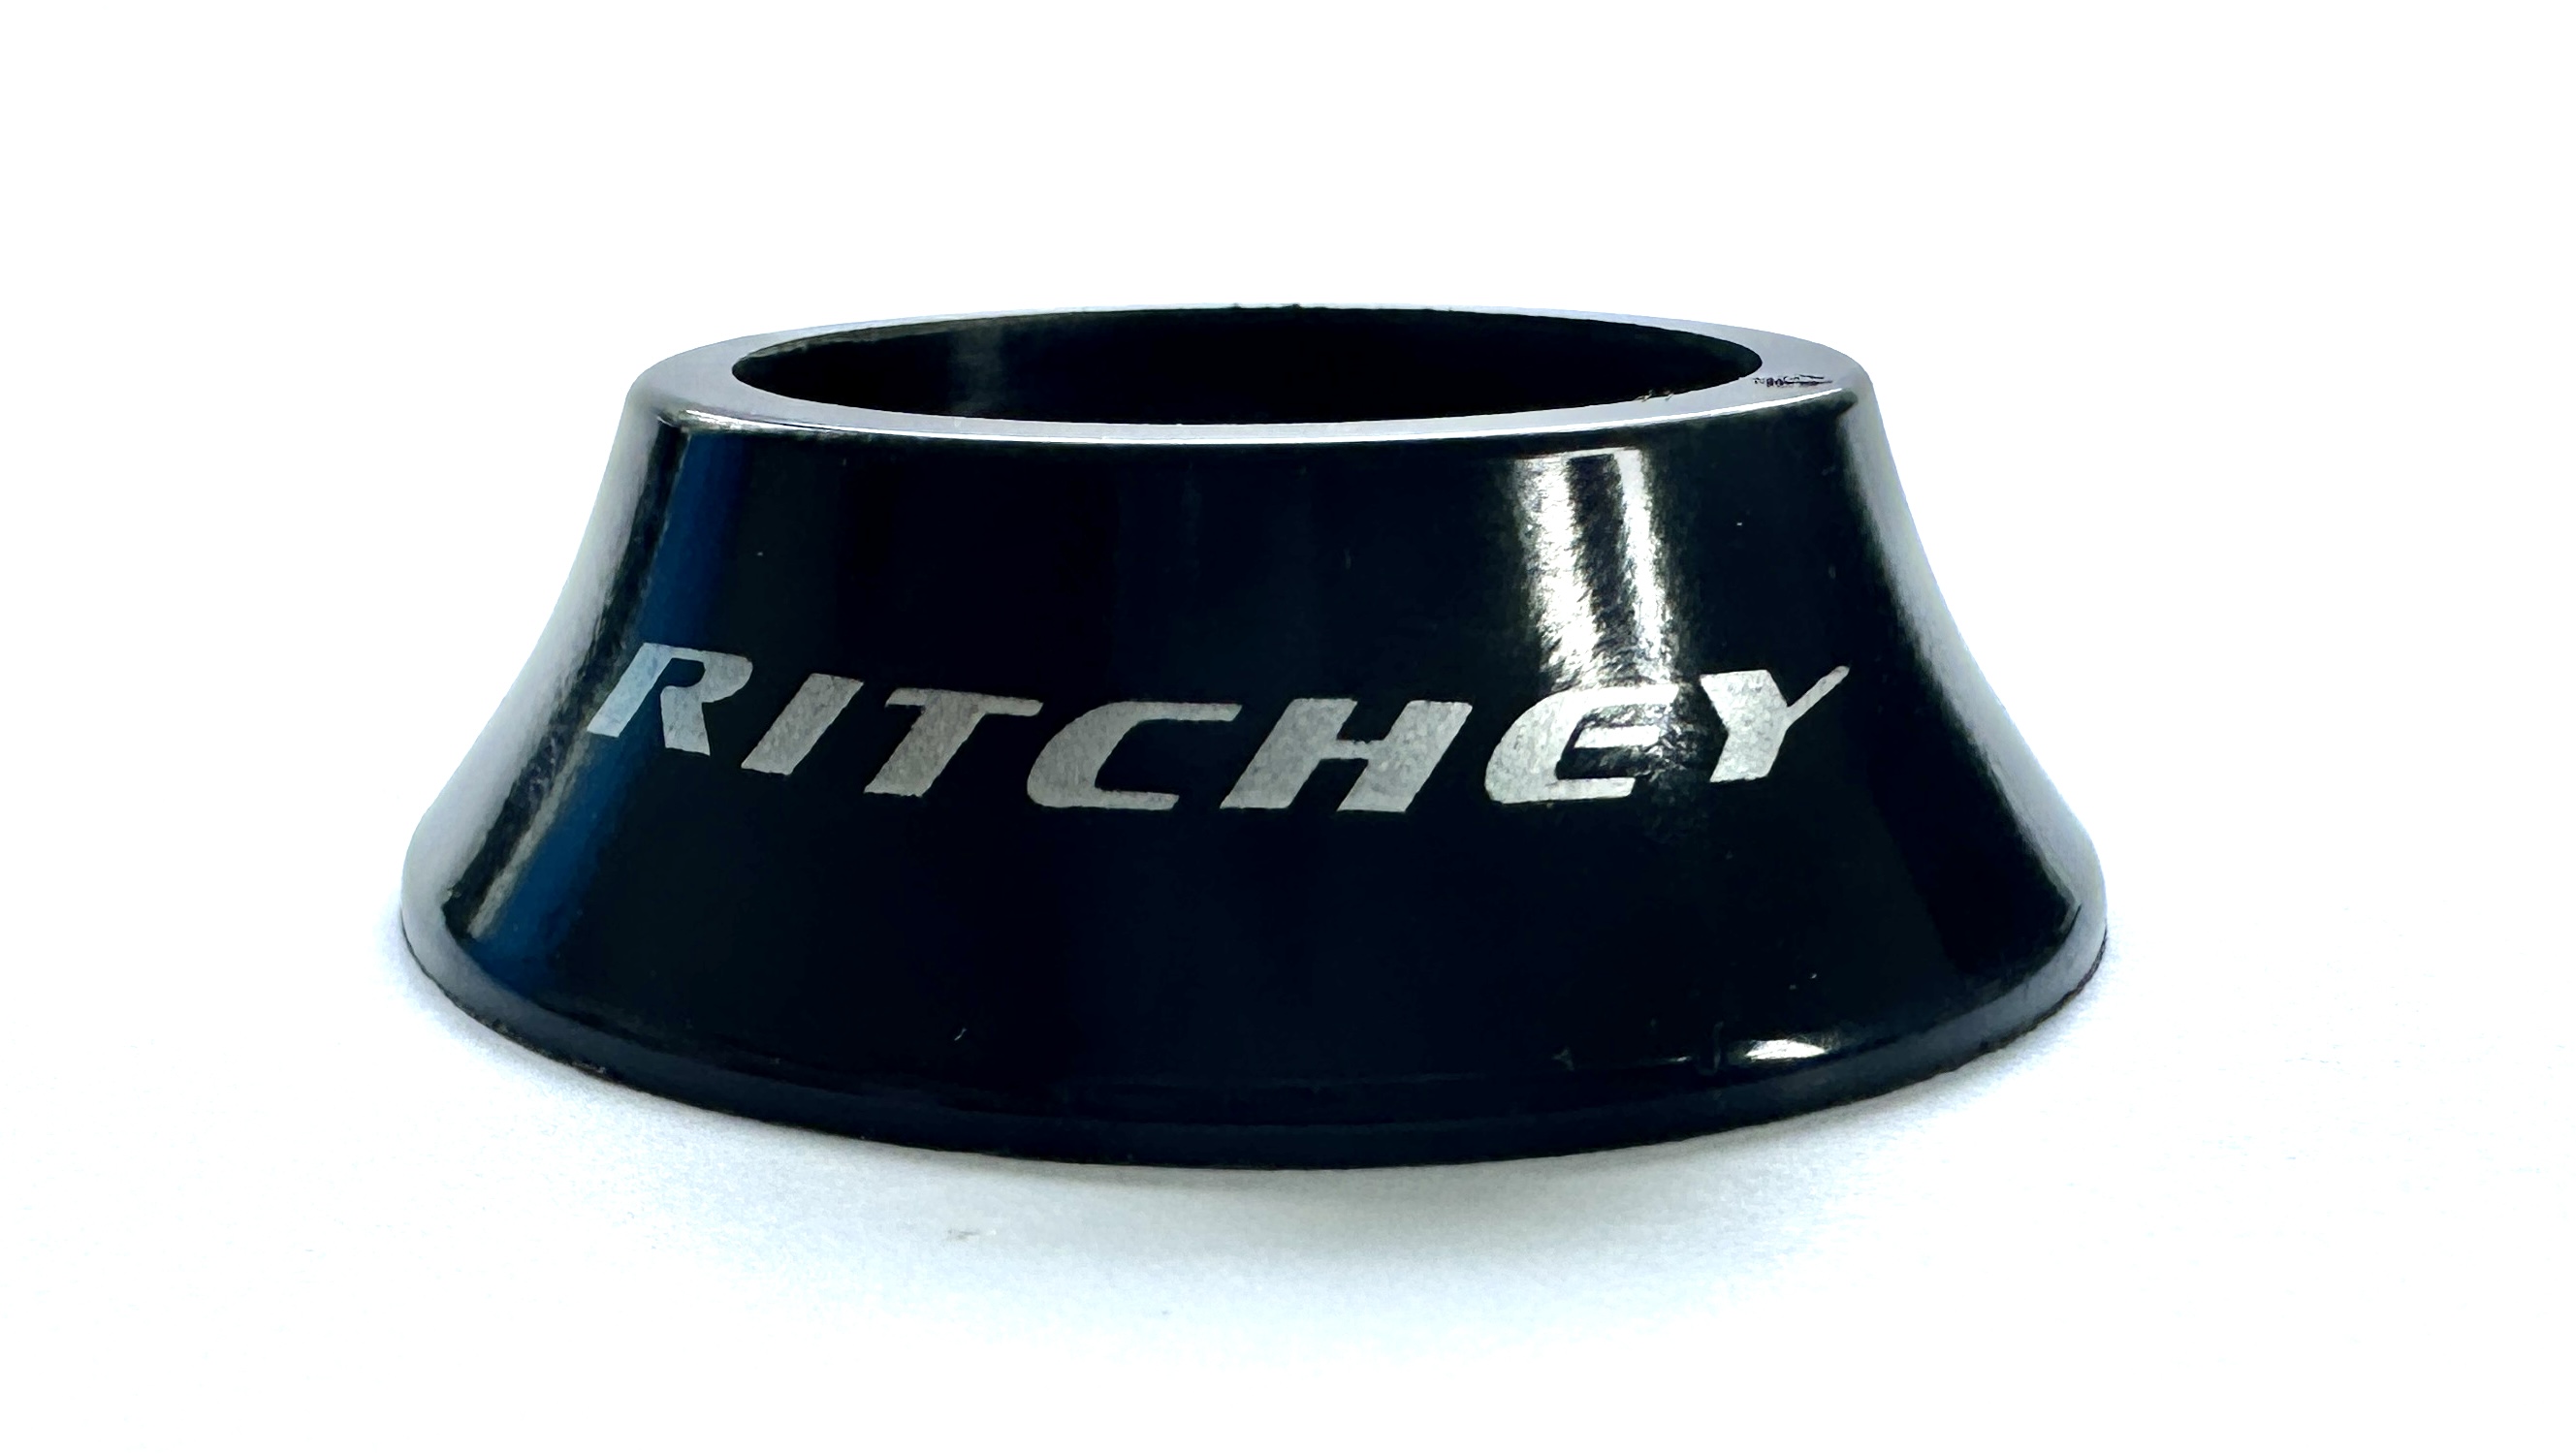 Entretoise conique de Ritchey pour jeu de direction semi-intégré brillant